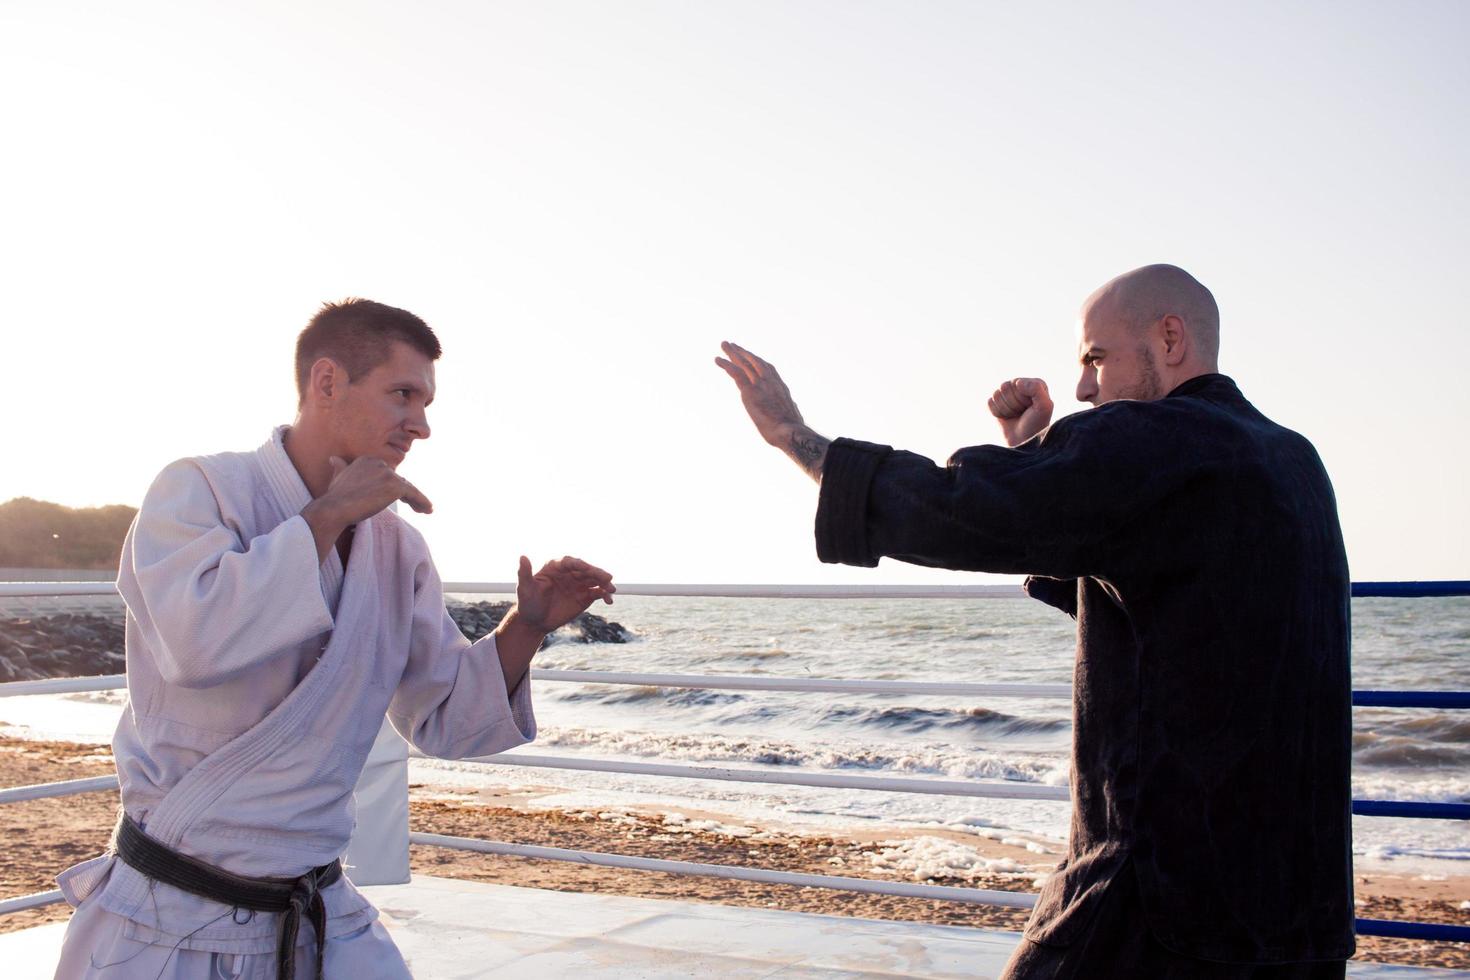 lutadores de karatê estão lutando no ringue de boxe de praia de manhã foto